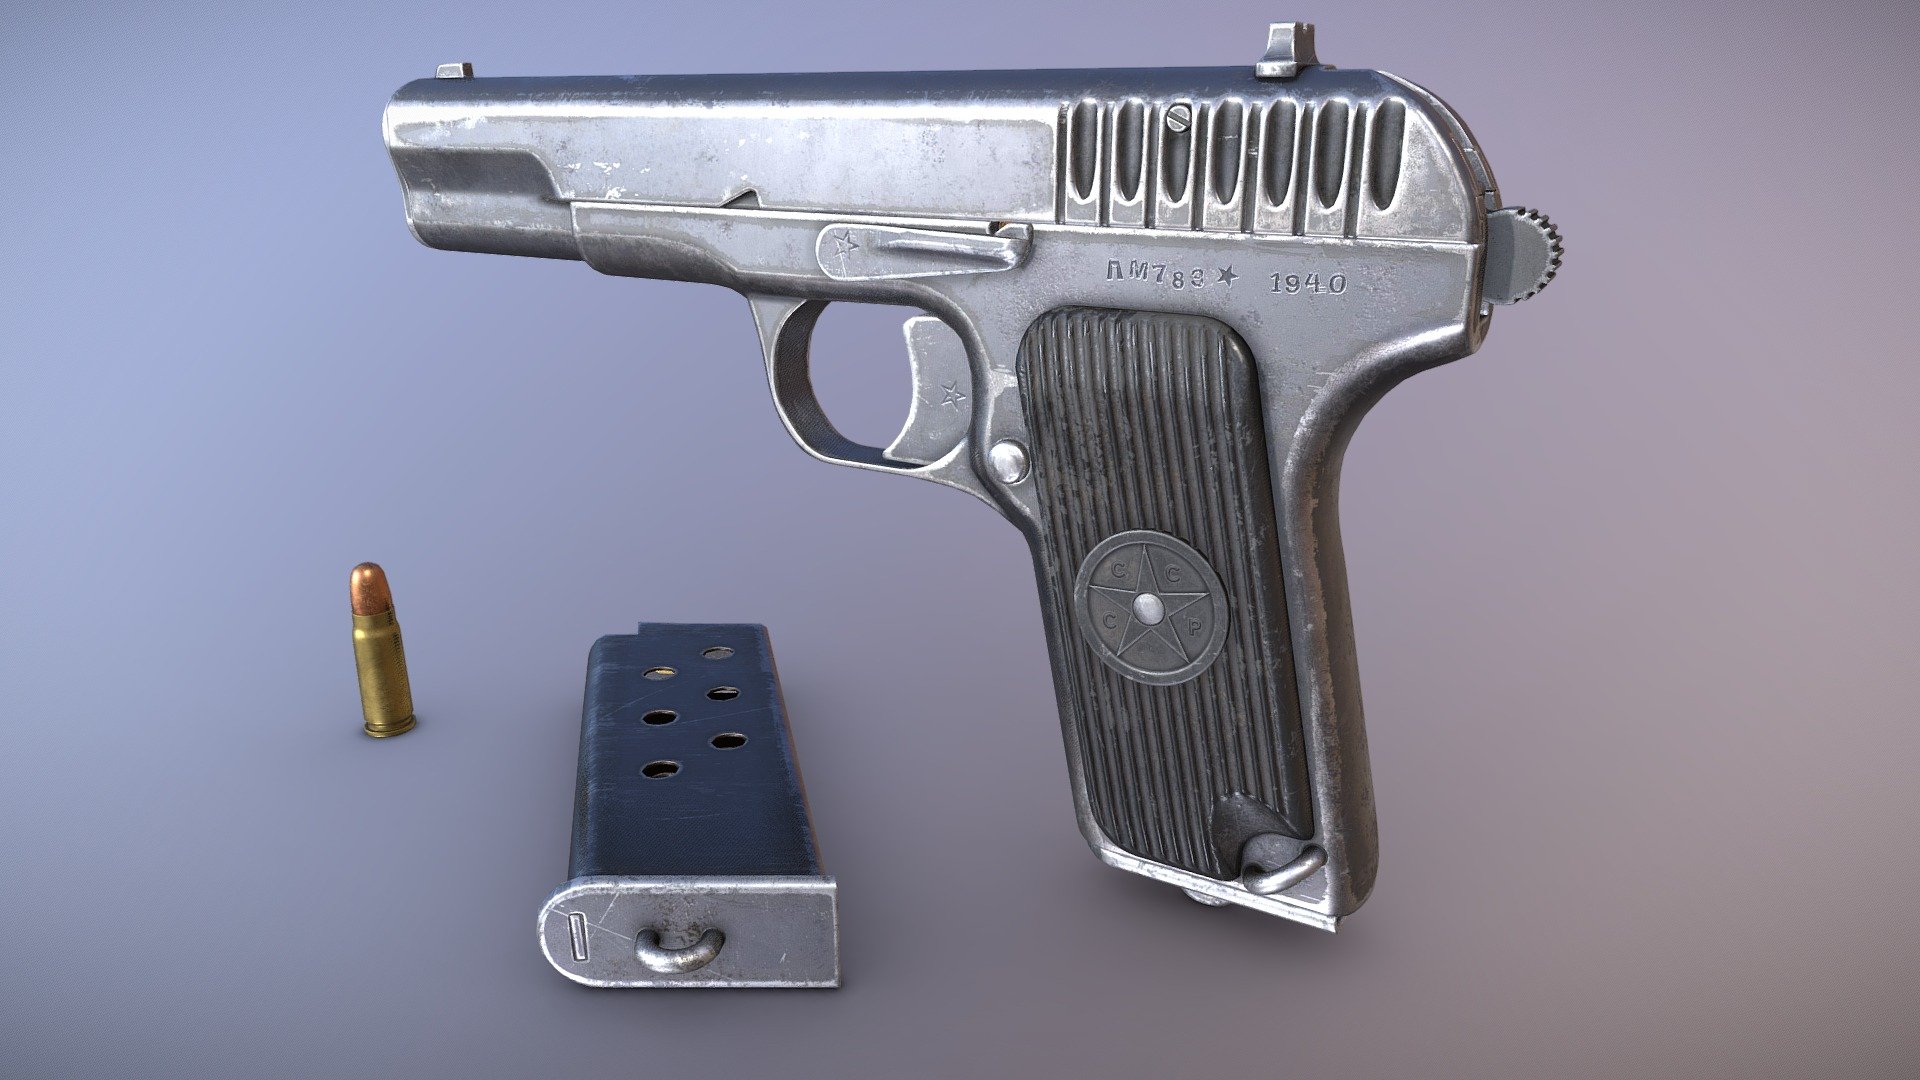 TT-33 Pistol